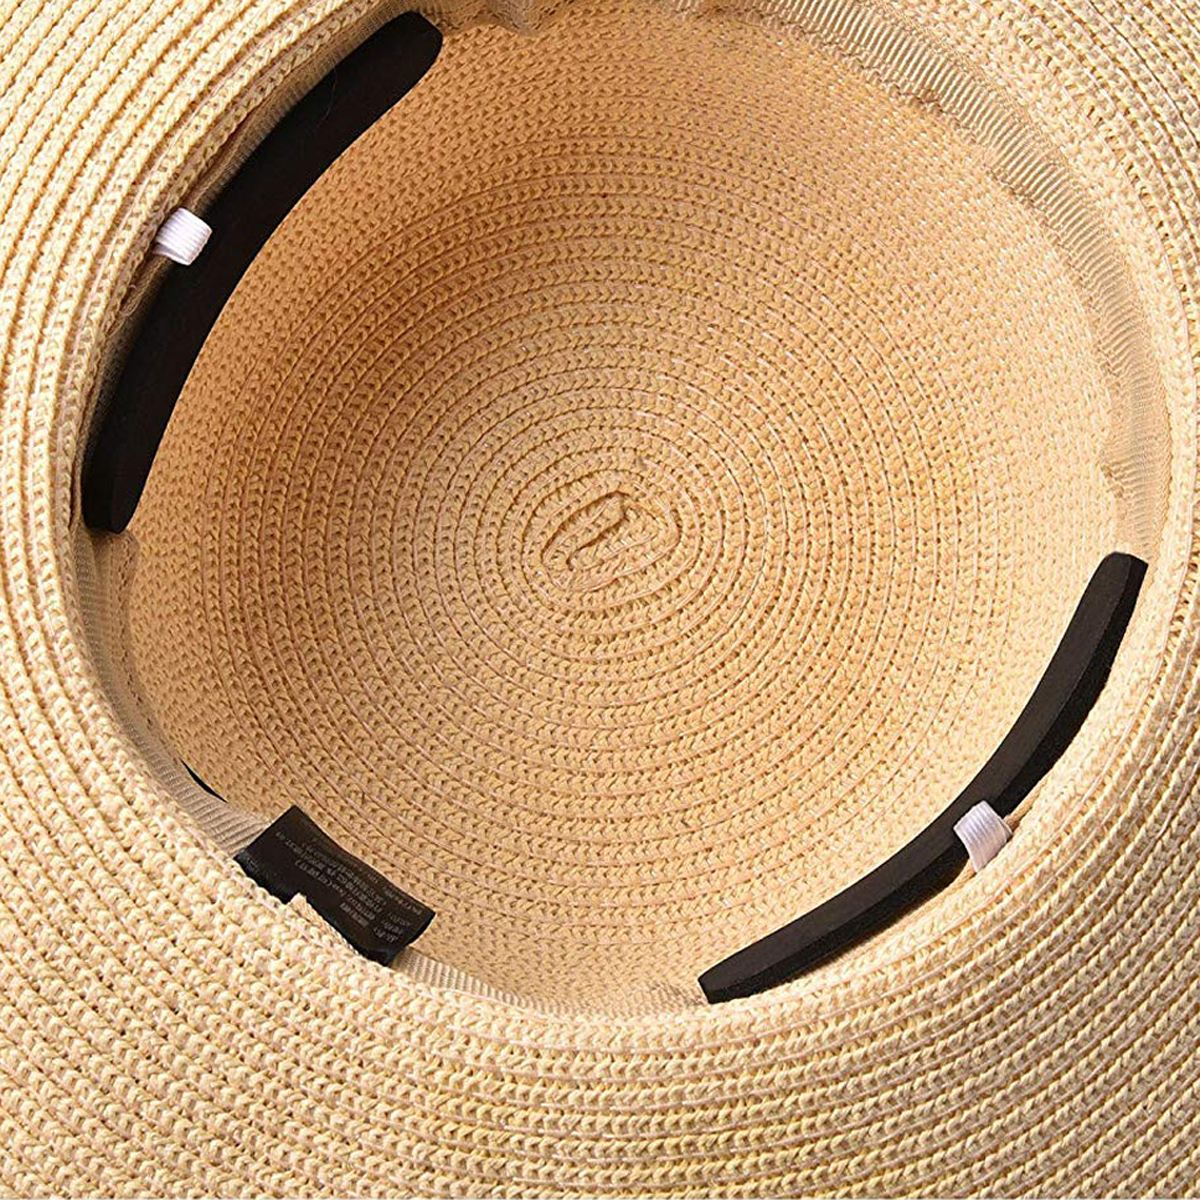 20 stk /10 stk eva skum cap størrelse reducering tape svedbånd hatte cap saver hat størrelse klistermærke sy klæbebånd